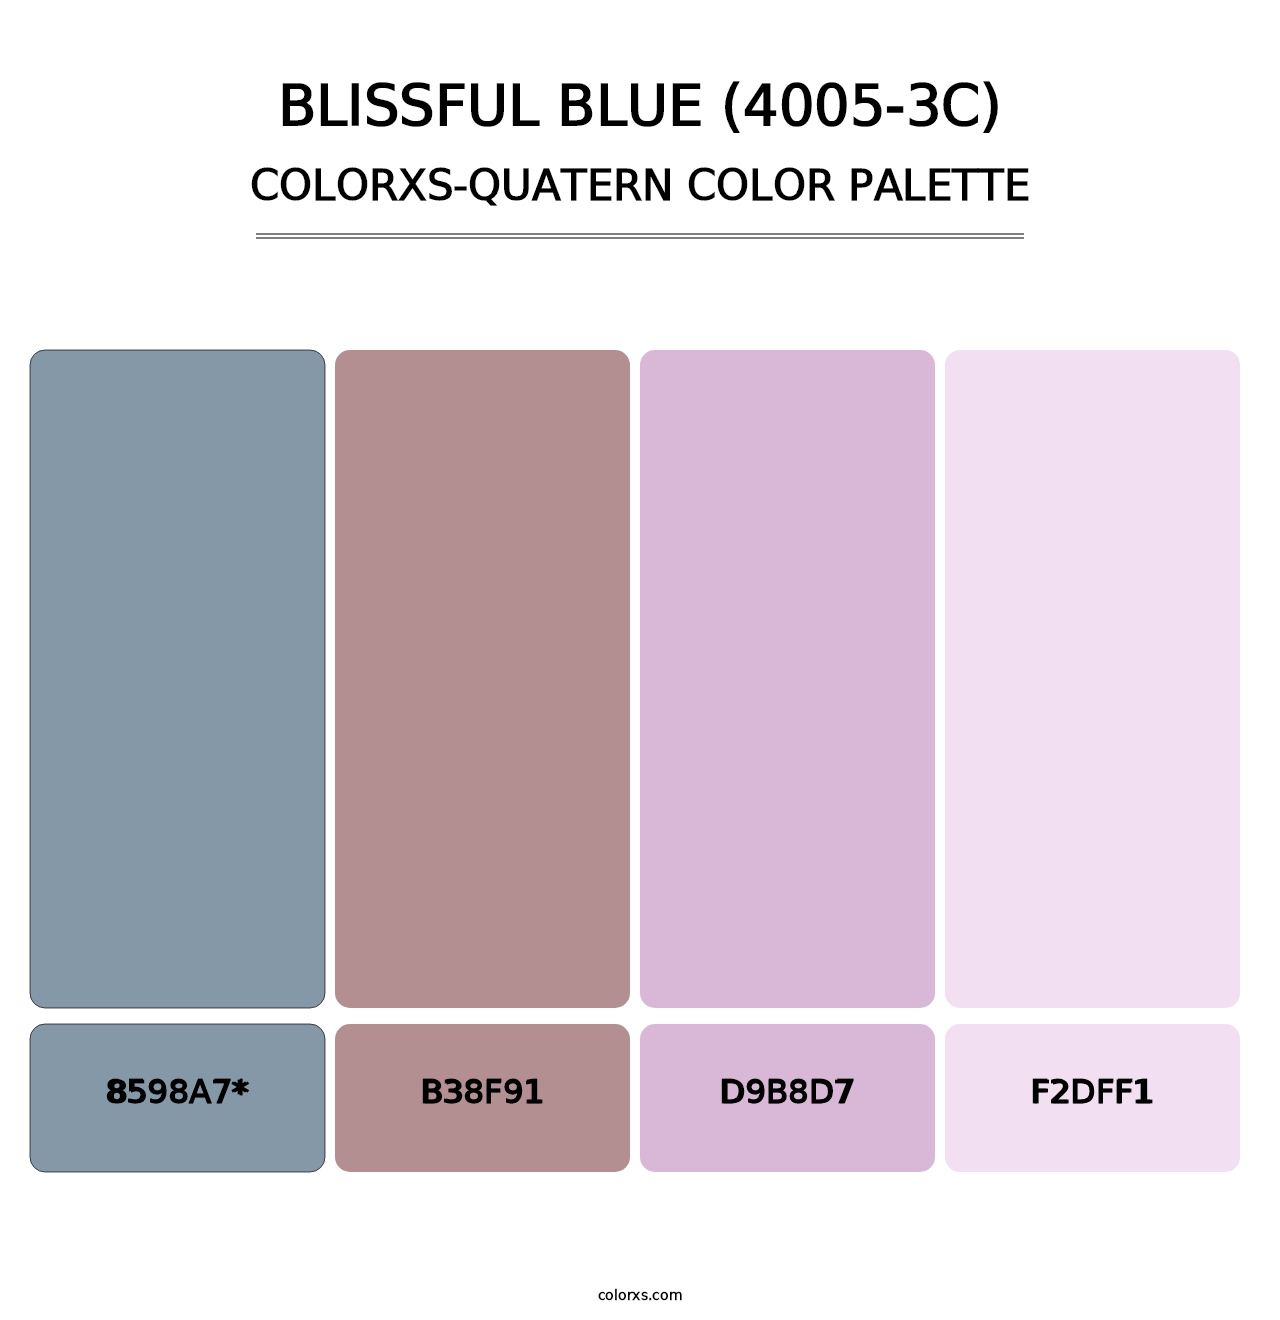 Blissful Blue (4005-3C) - Colorxs Quatern Palette